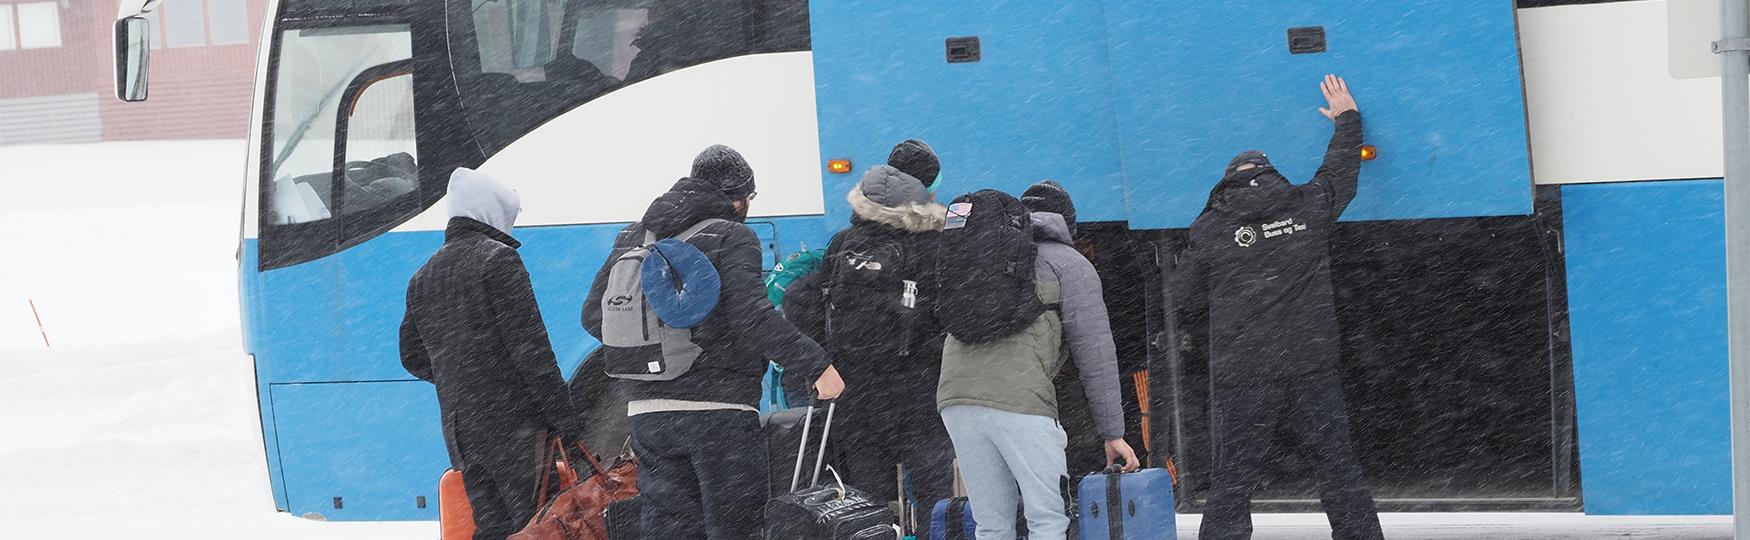 En bussjåfør som hjelper en gruppe gjester med å laste bagasje inn i en buss i tett snøvær